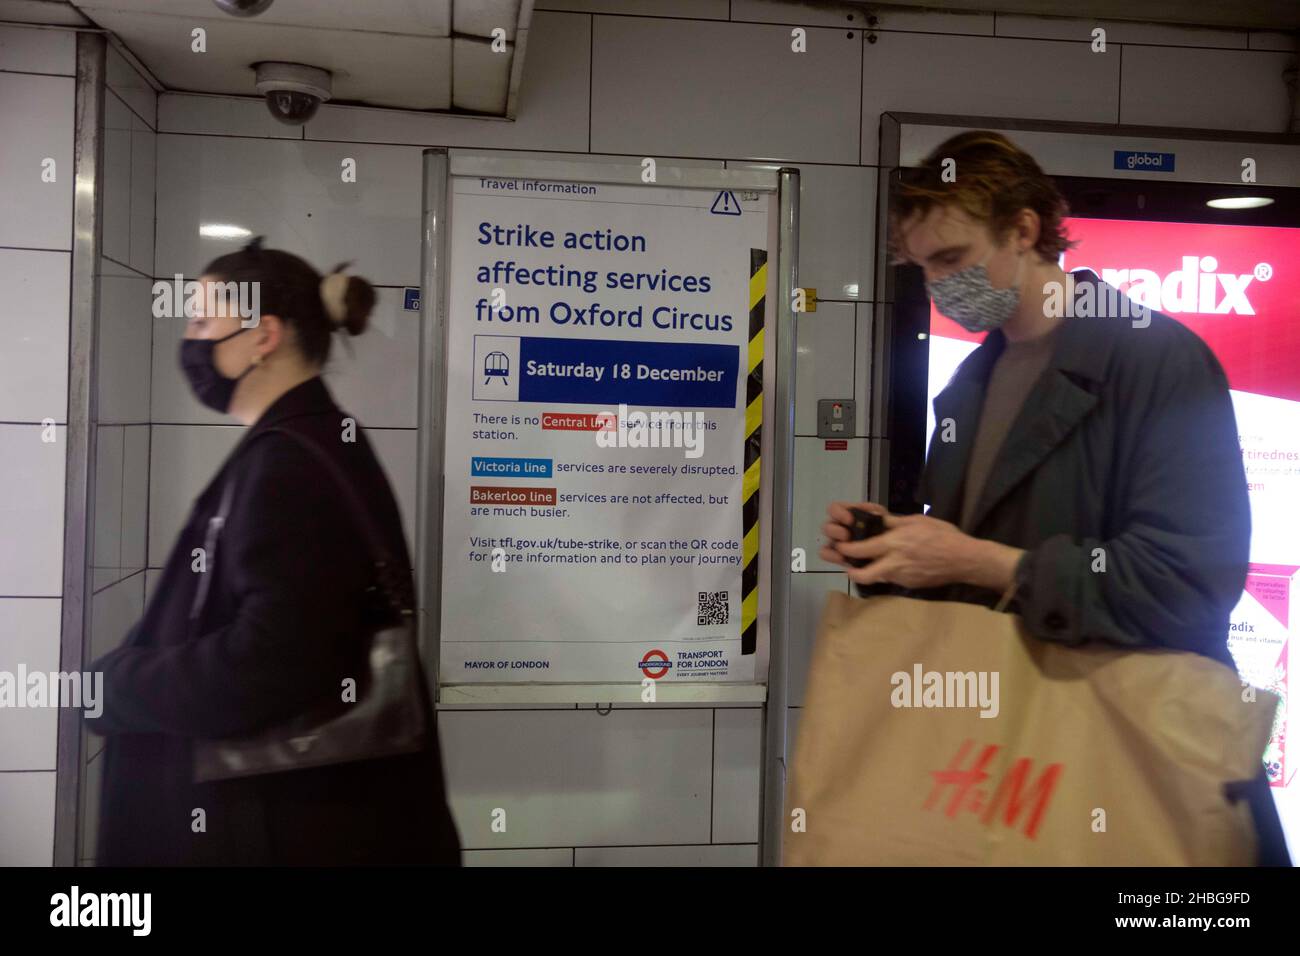 pic shows: Les travailleurs de la grève souterraine de Londres ont causé un énorme surpeuplement sur les plates-formes à euston et Oxford Circus aujourd'hui samedi 18.12.21 malgré Banque D'Images